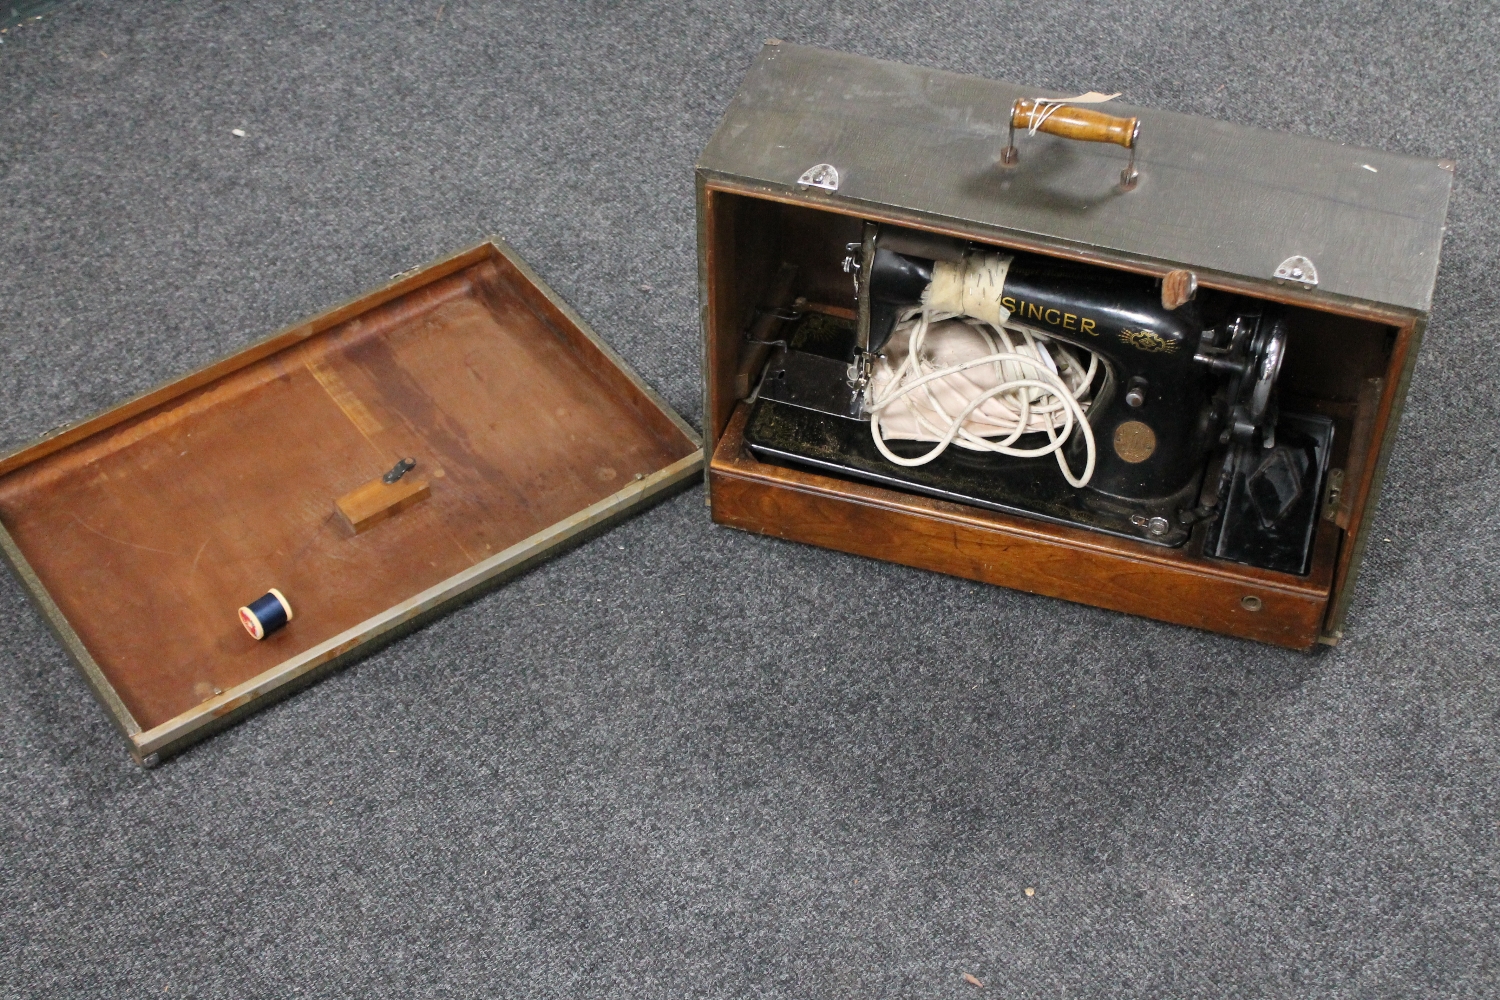 A cased mid twentieth century Singer sewing machine